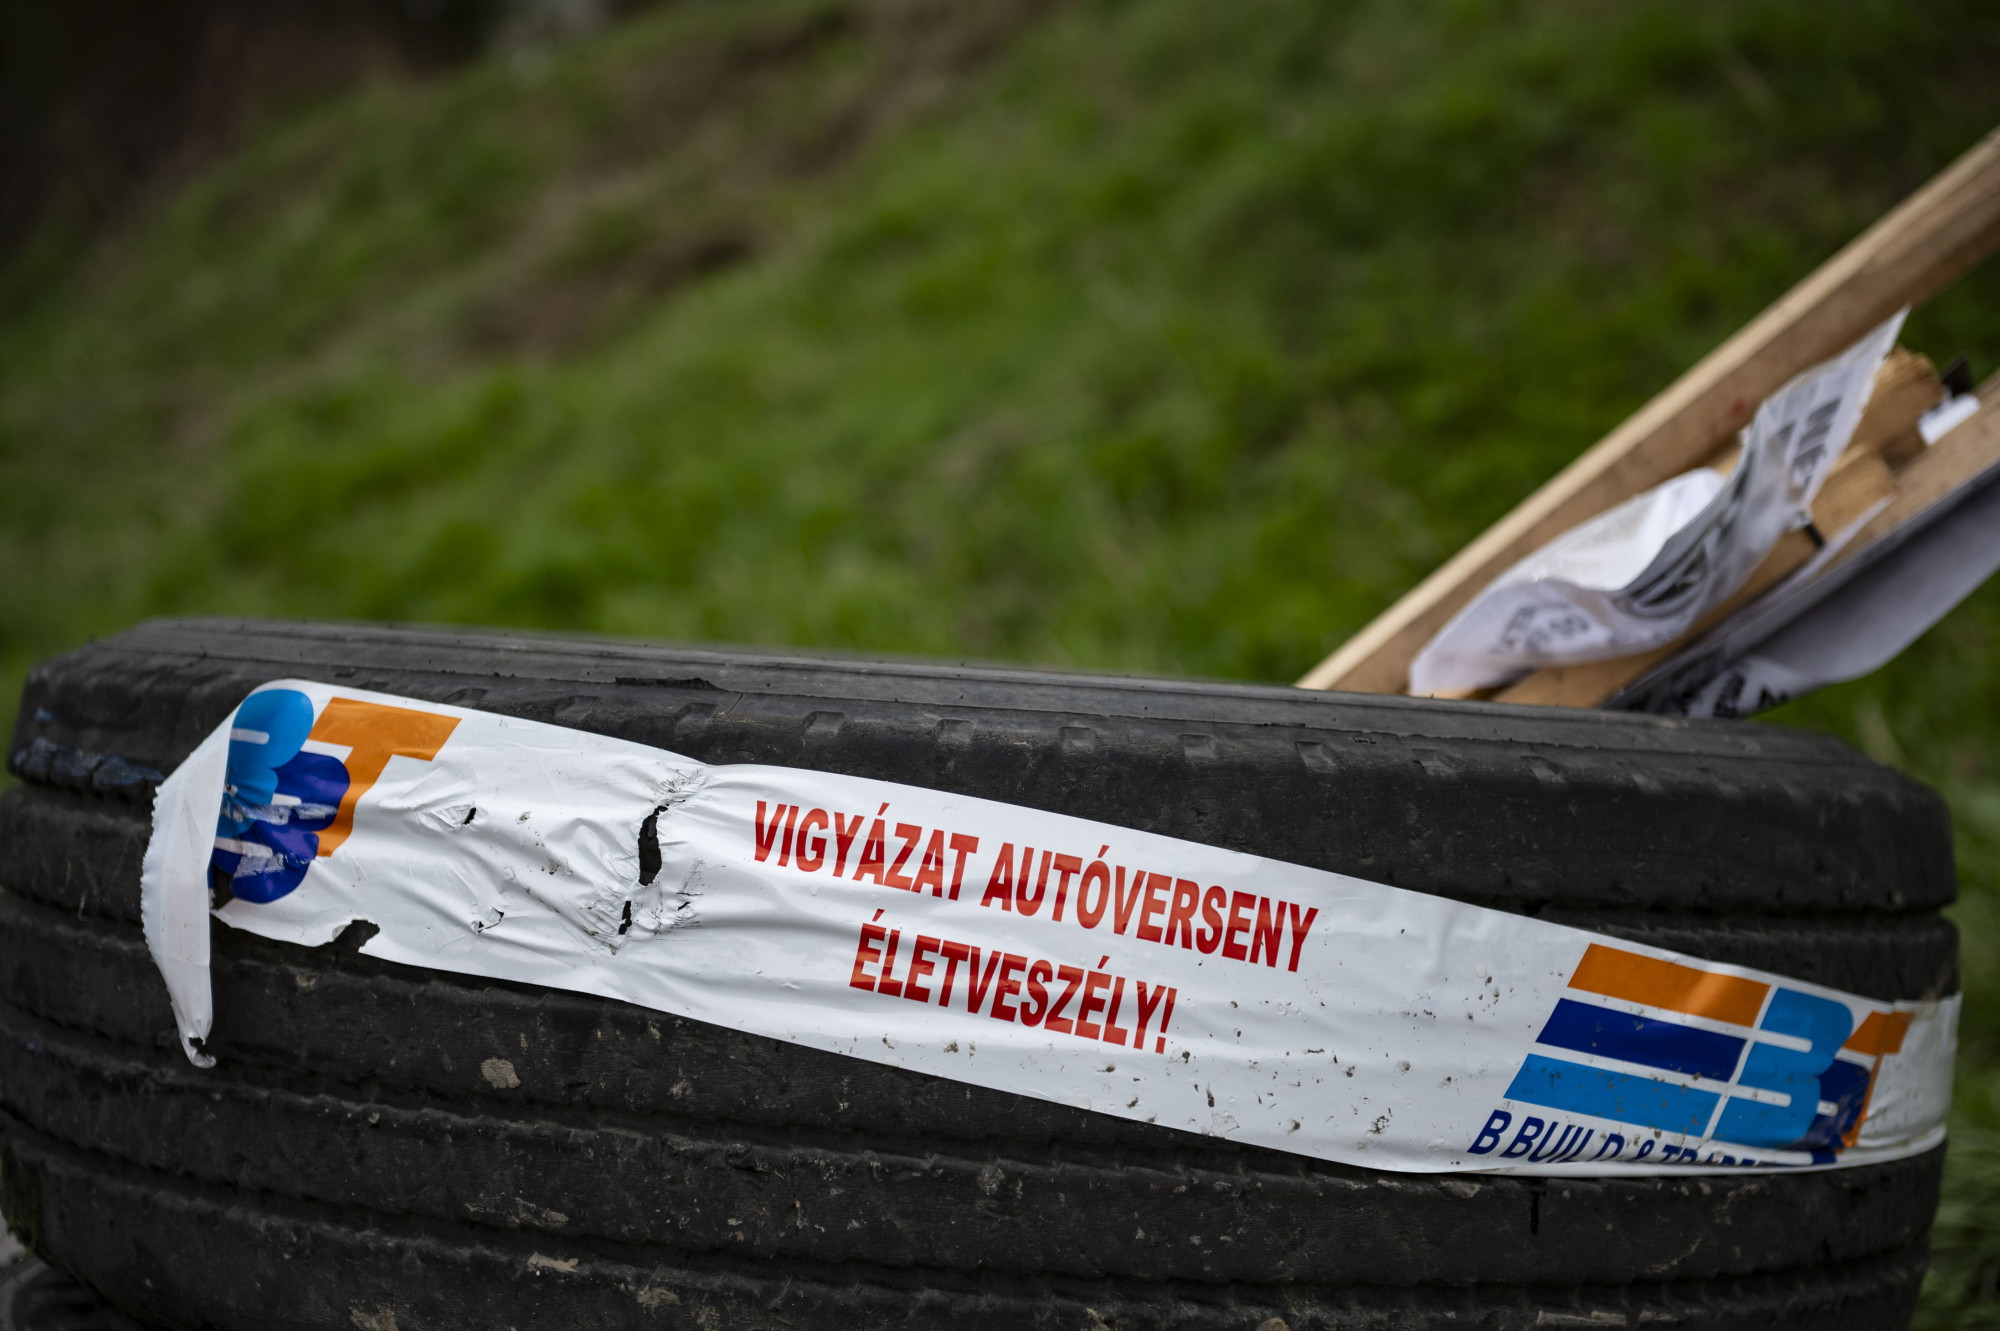 Ifj. Mészáros Lőrincék eltévedtek, ezért szállt beléjük a csehek autója a romániai raliversenyen